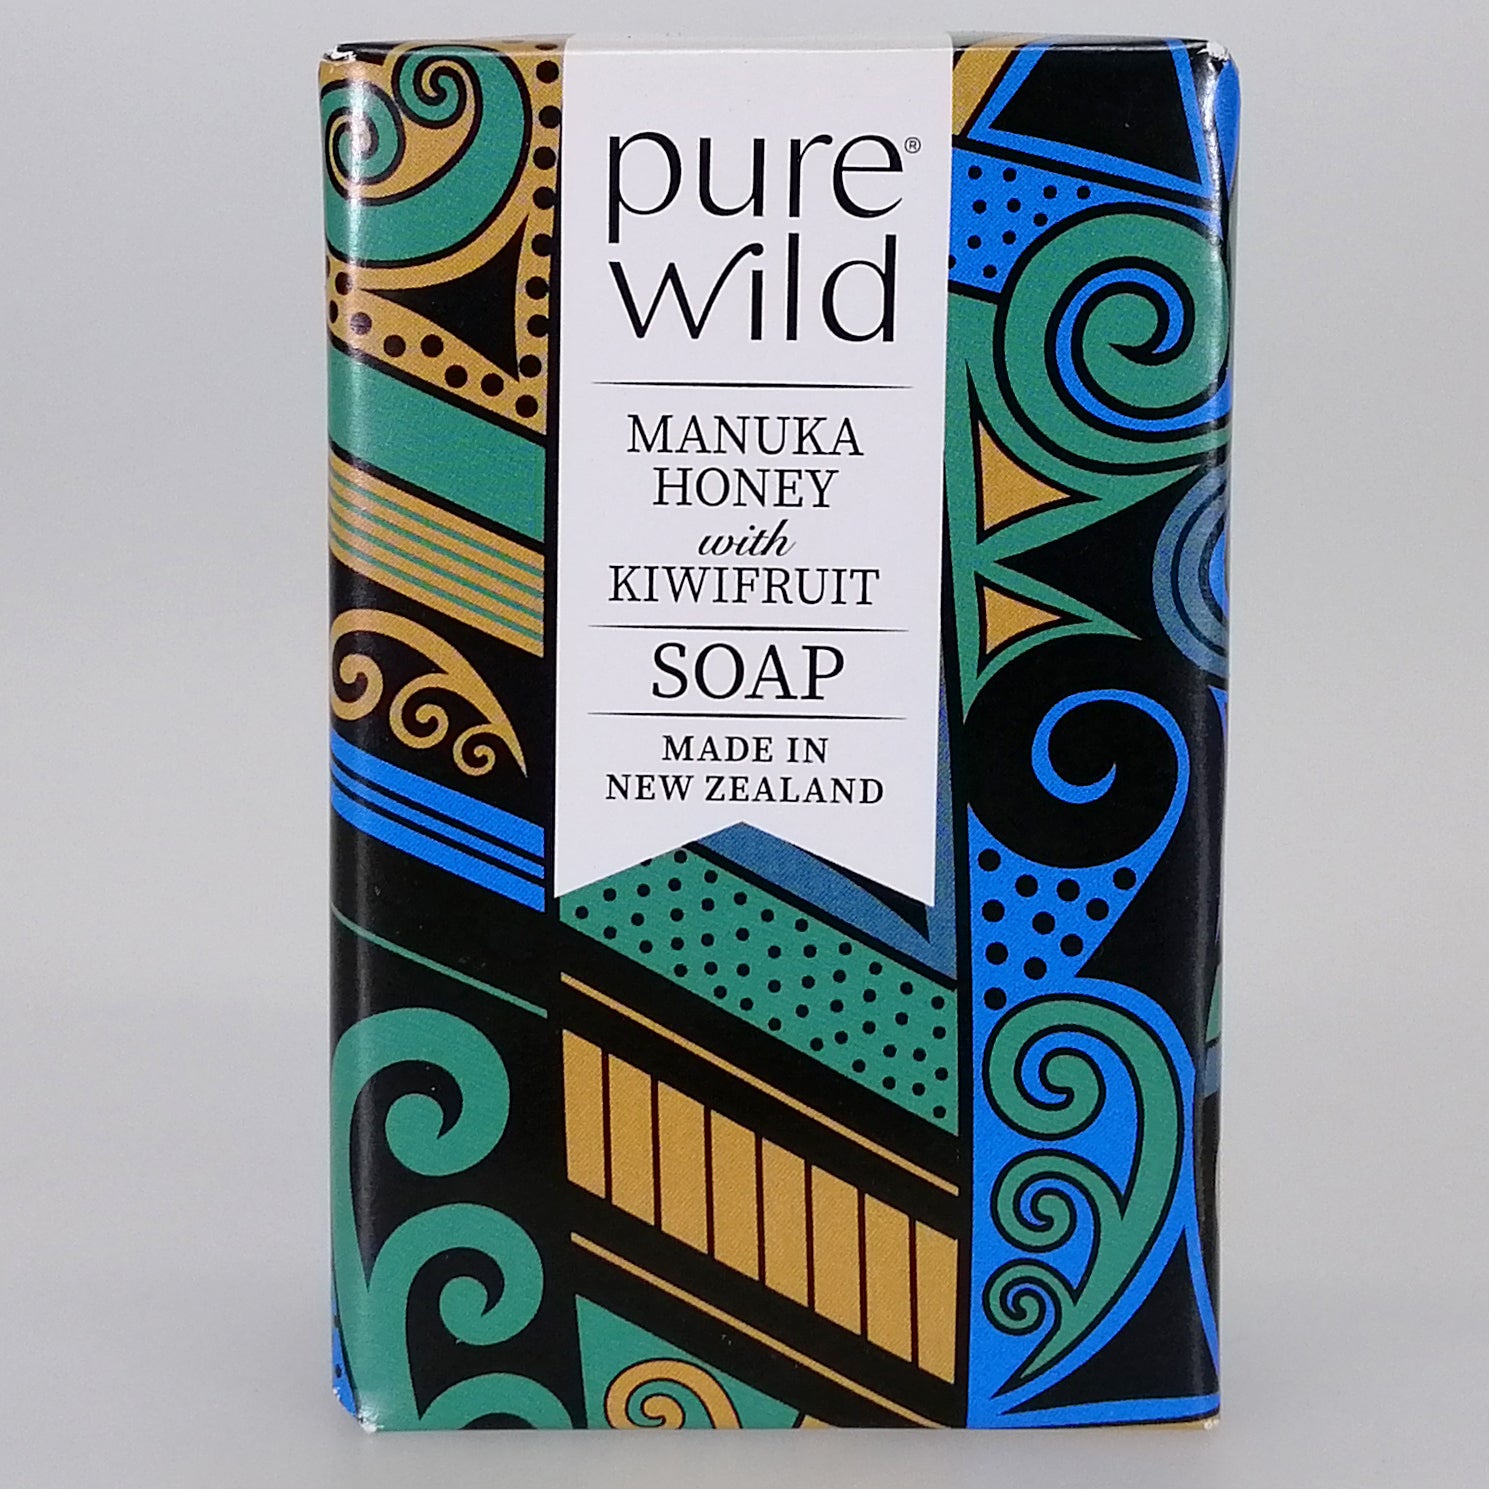 Purewild Manuka Honey & Kiwifruit Soap - Koru